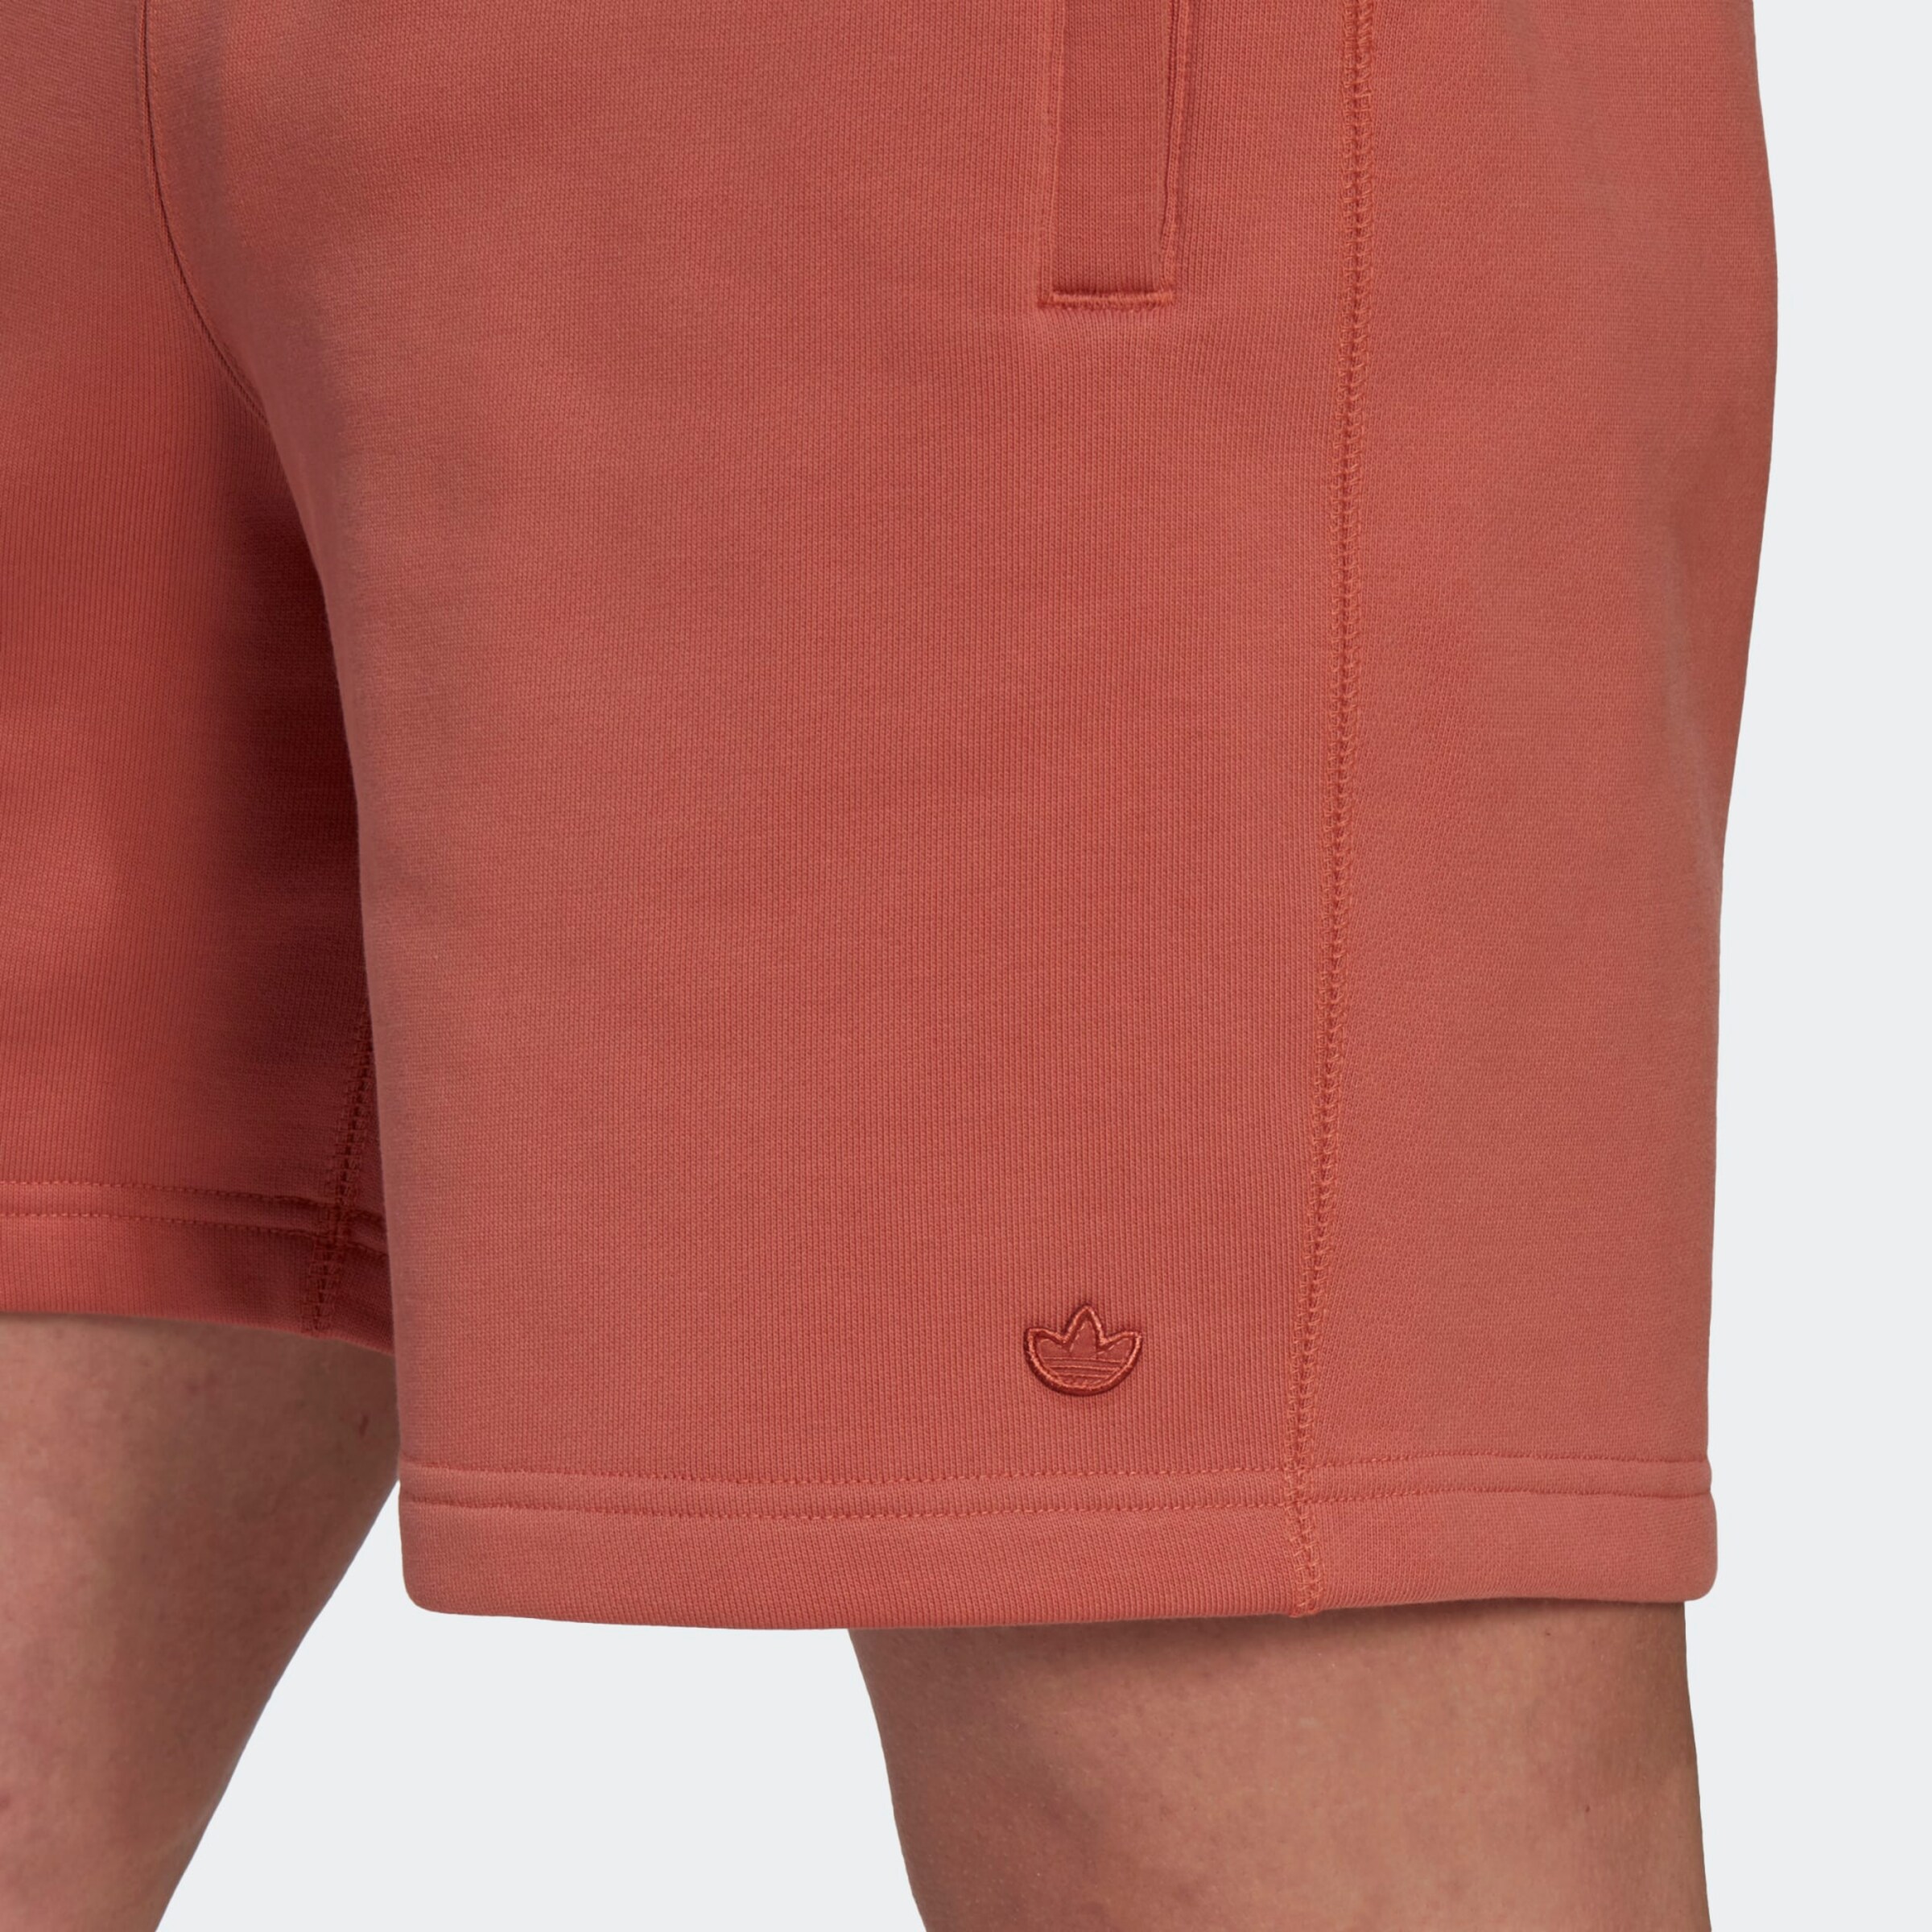 Männer Hosen ADIDAS ORIGINALS Shorts in Braun - GO81227